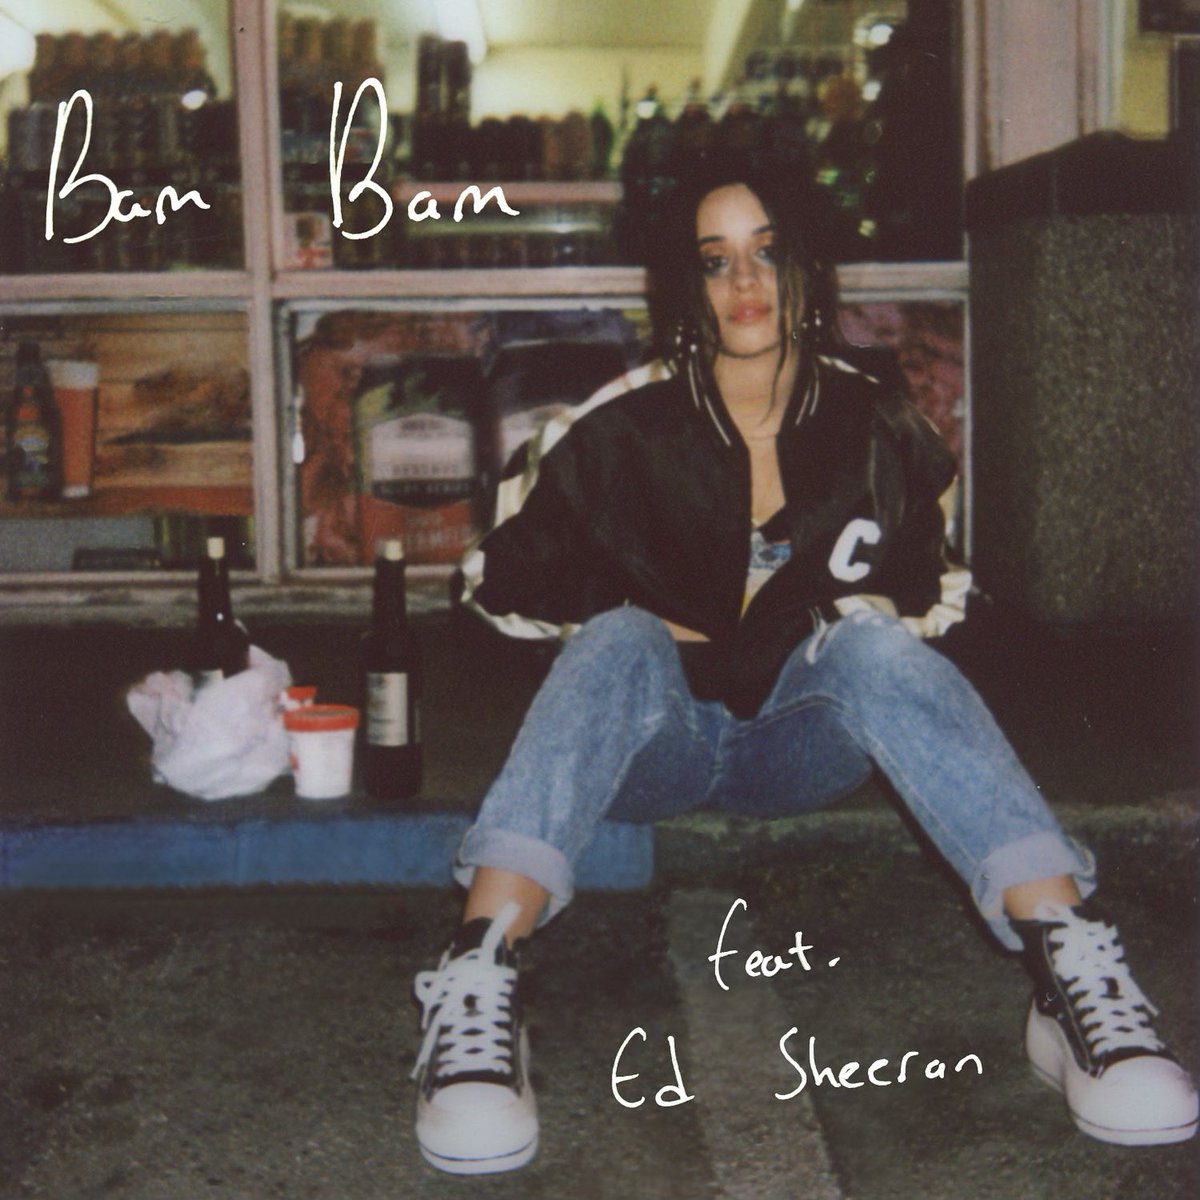 New @Camila_Cabello single artwork for Bam Bam ft. @edsheeran shot by me! 📸 CAMILA X ED BAM BAM IS COMING CAMILA IS COMING